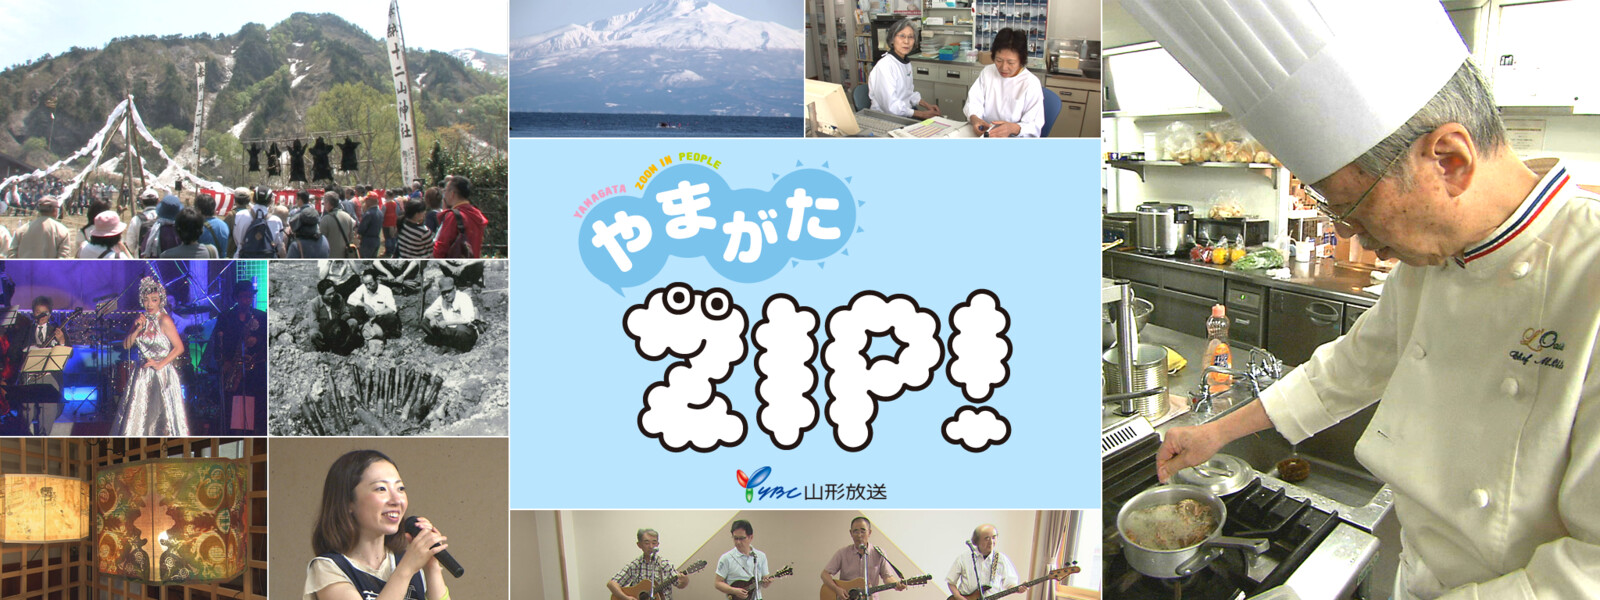 やまがたZIP!の動画 - 7daysTV × ZIP! かぞくムービー